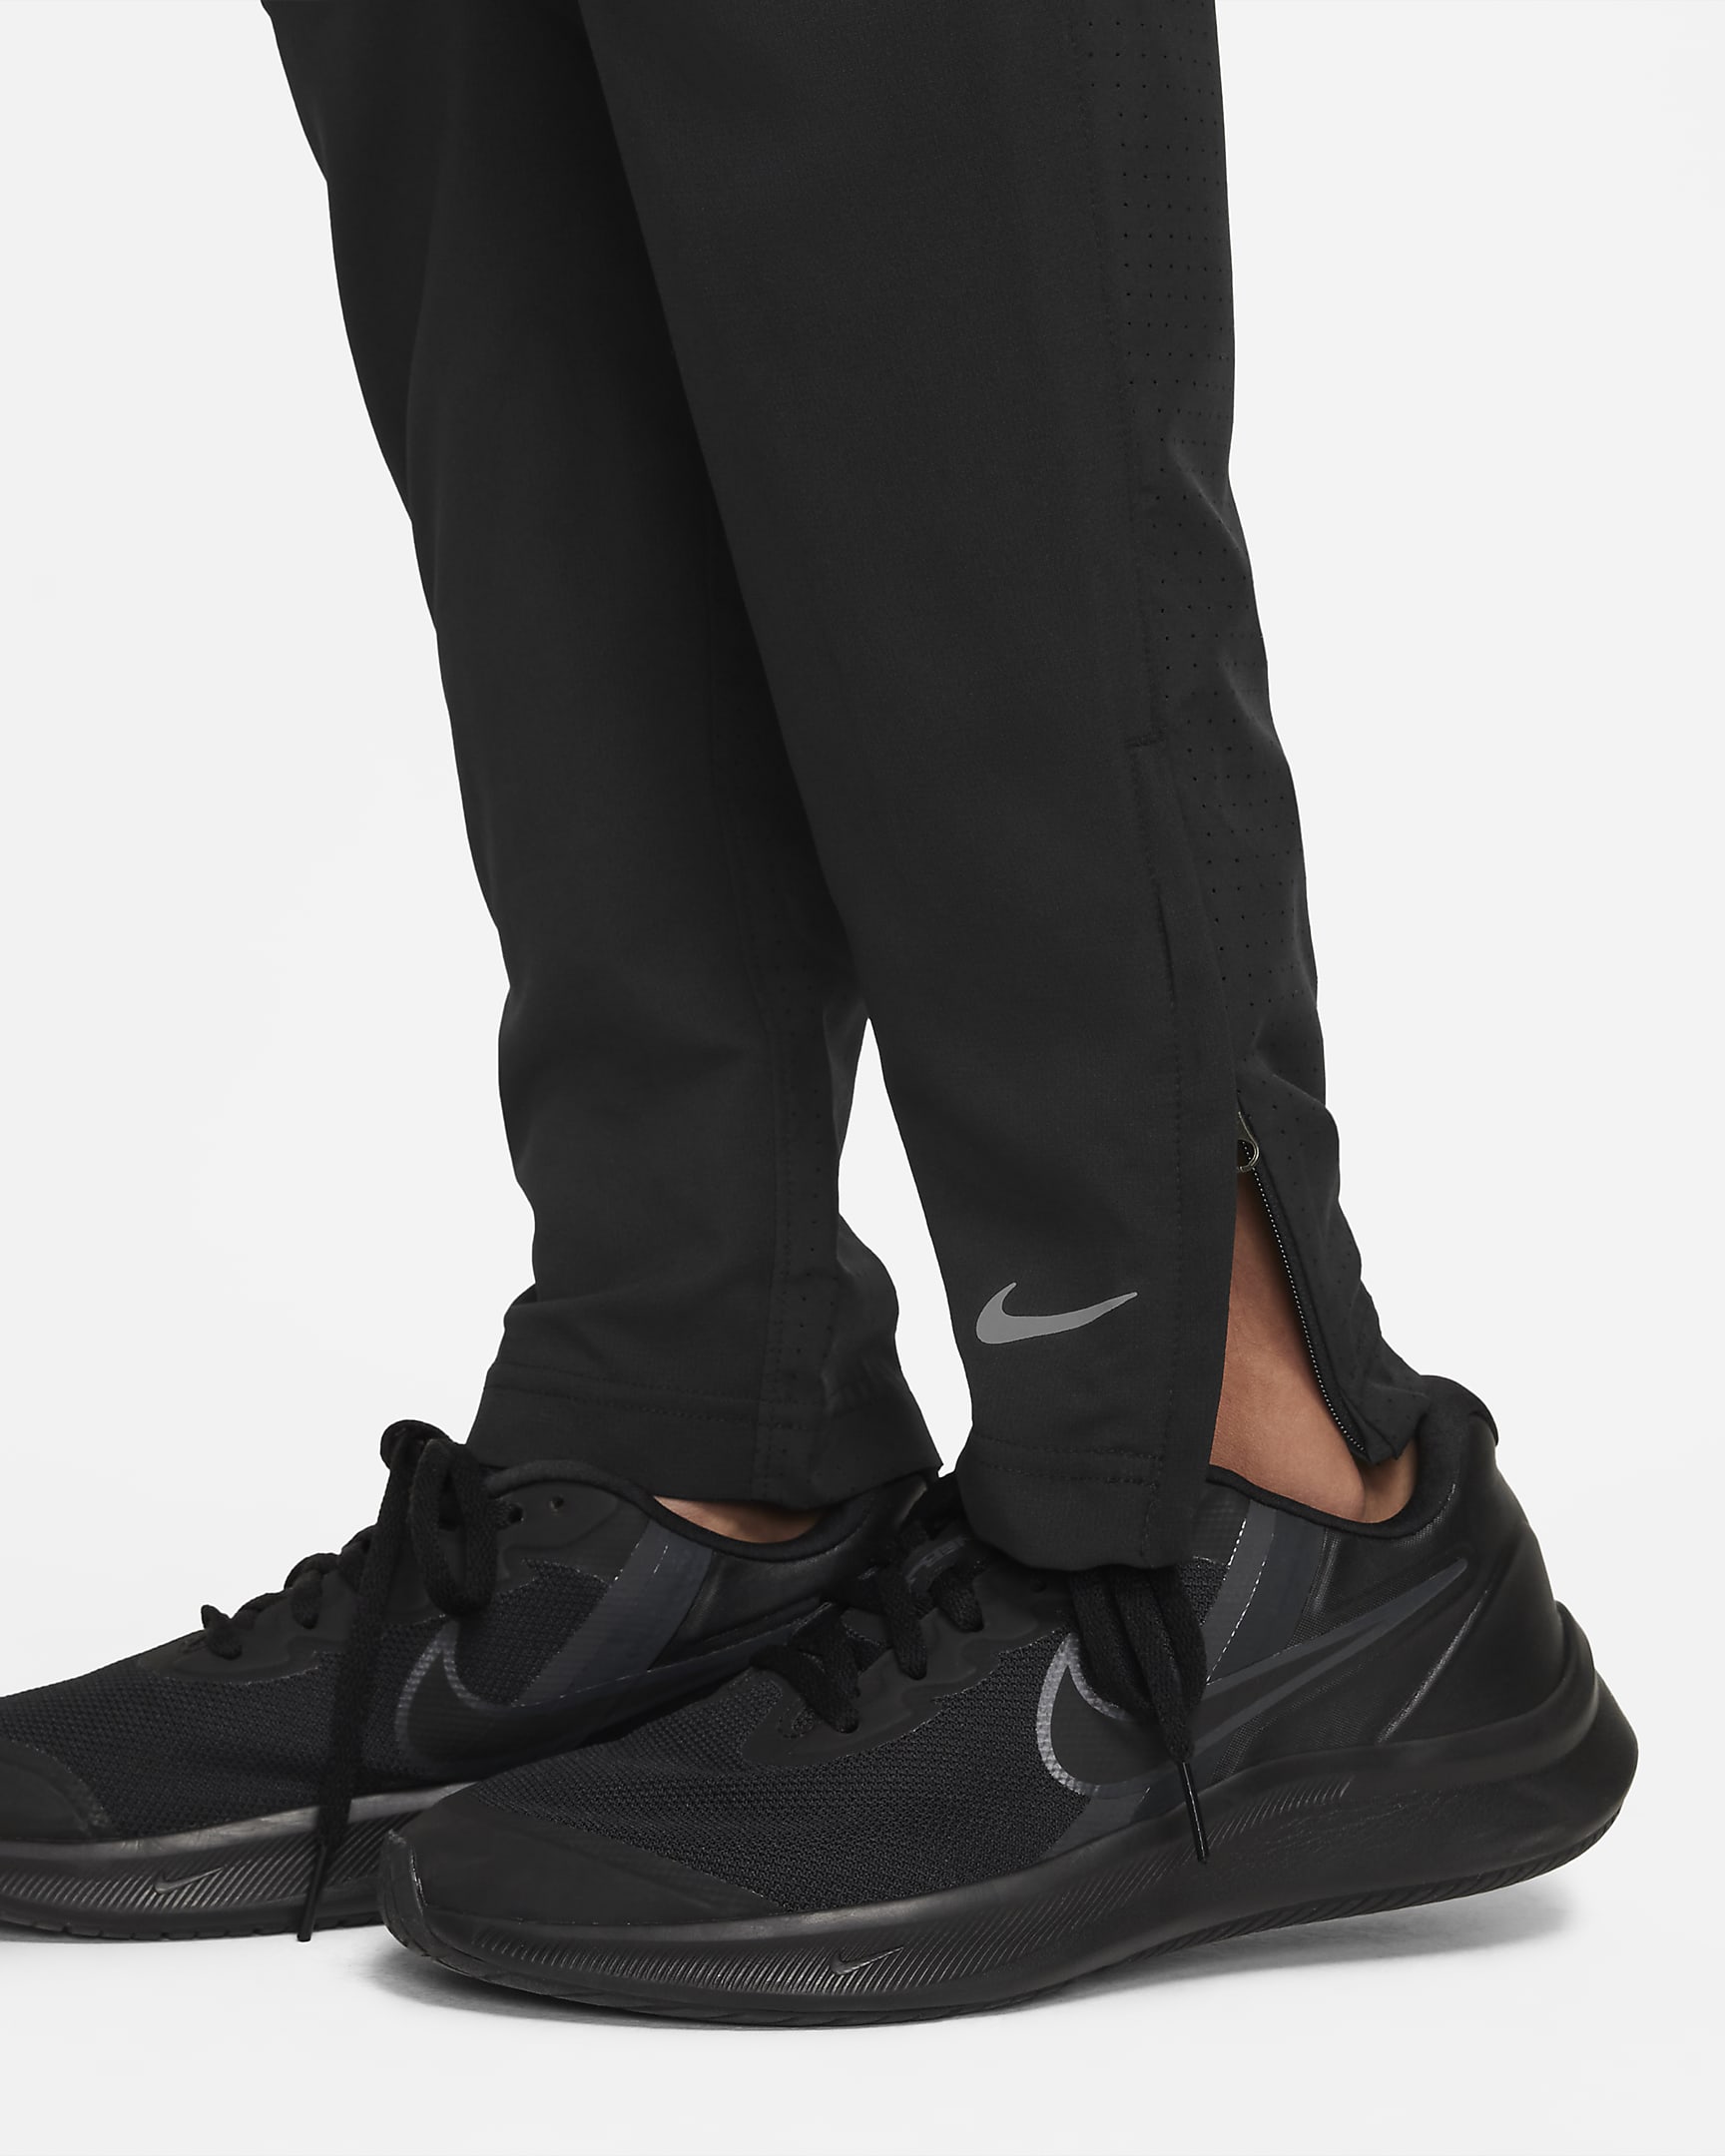 Nike Multi Tech EasyOn Older Kids' (Boys') Dri-FIT Training Trousers ...